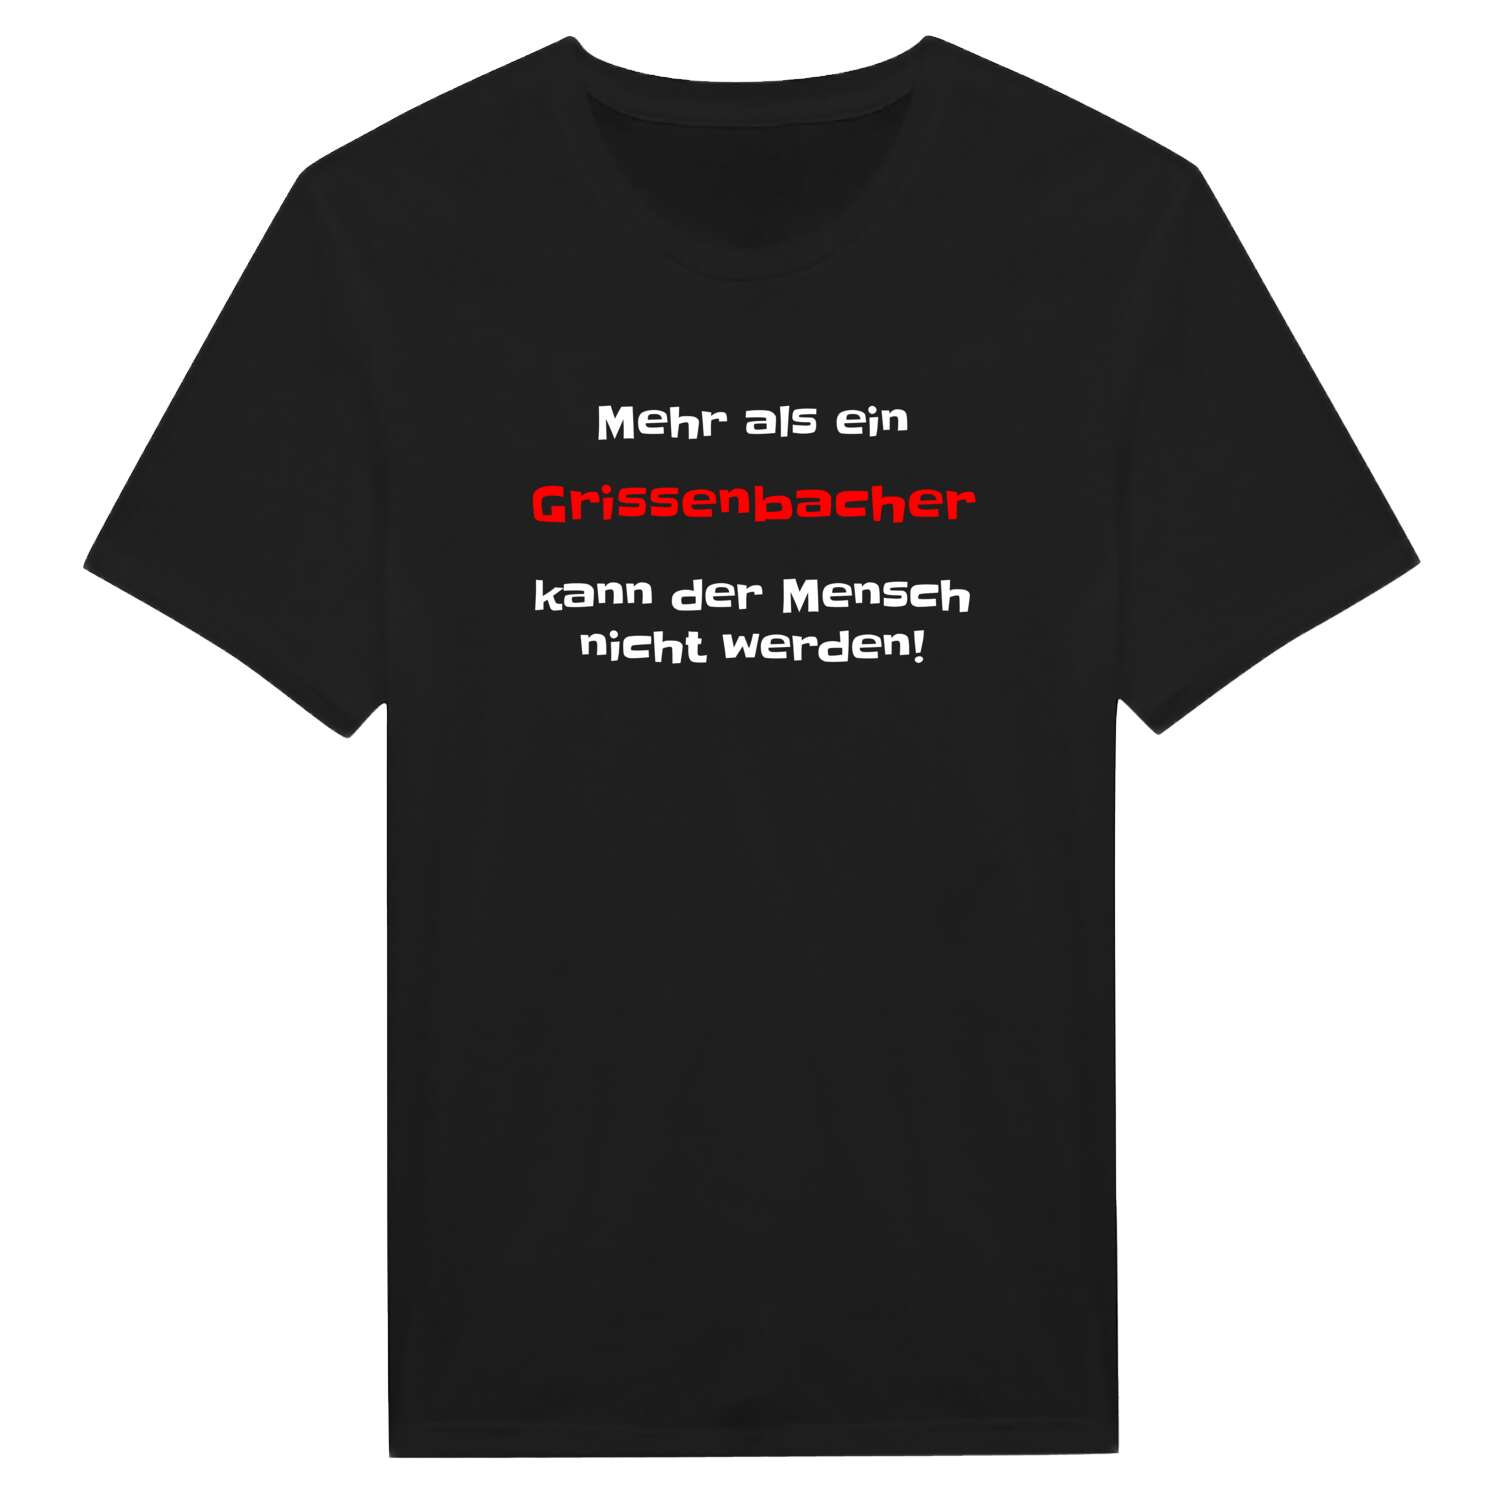 Grissenbach T-Shirt »Mehr als ein«